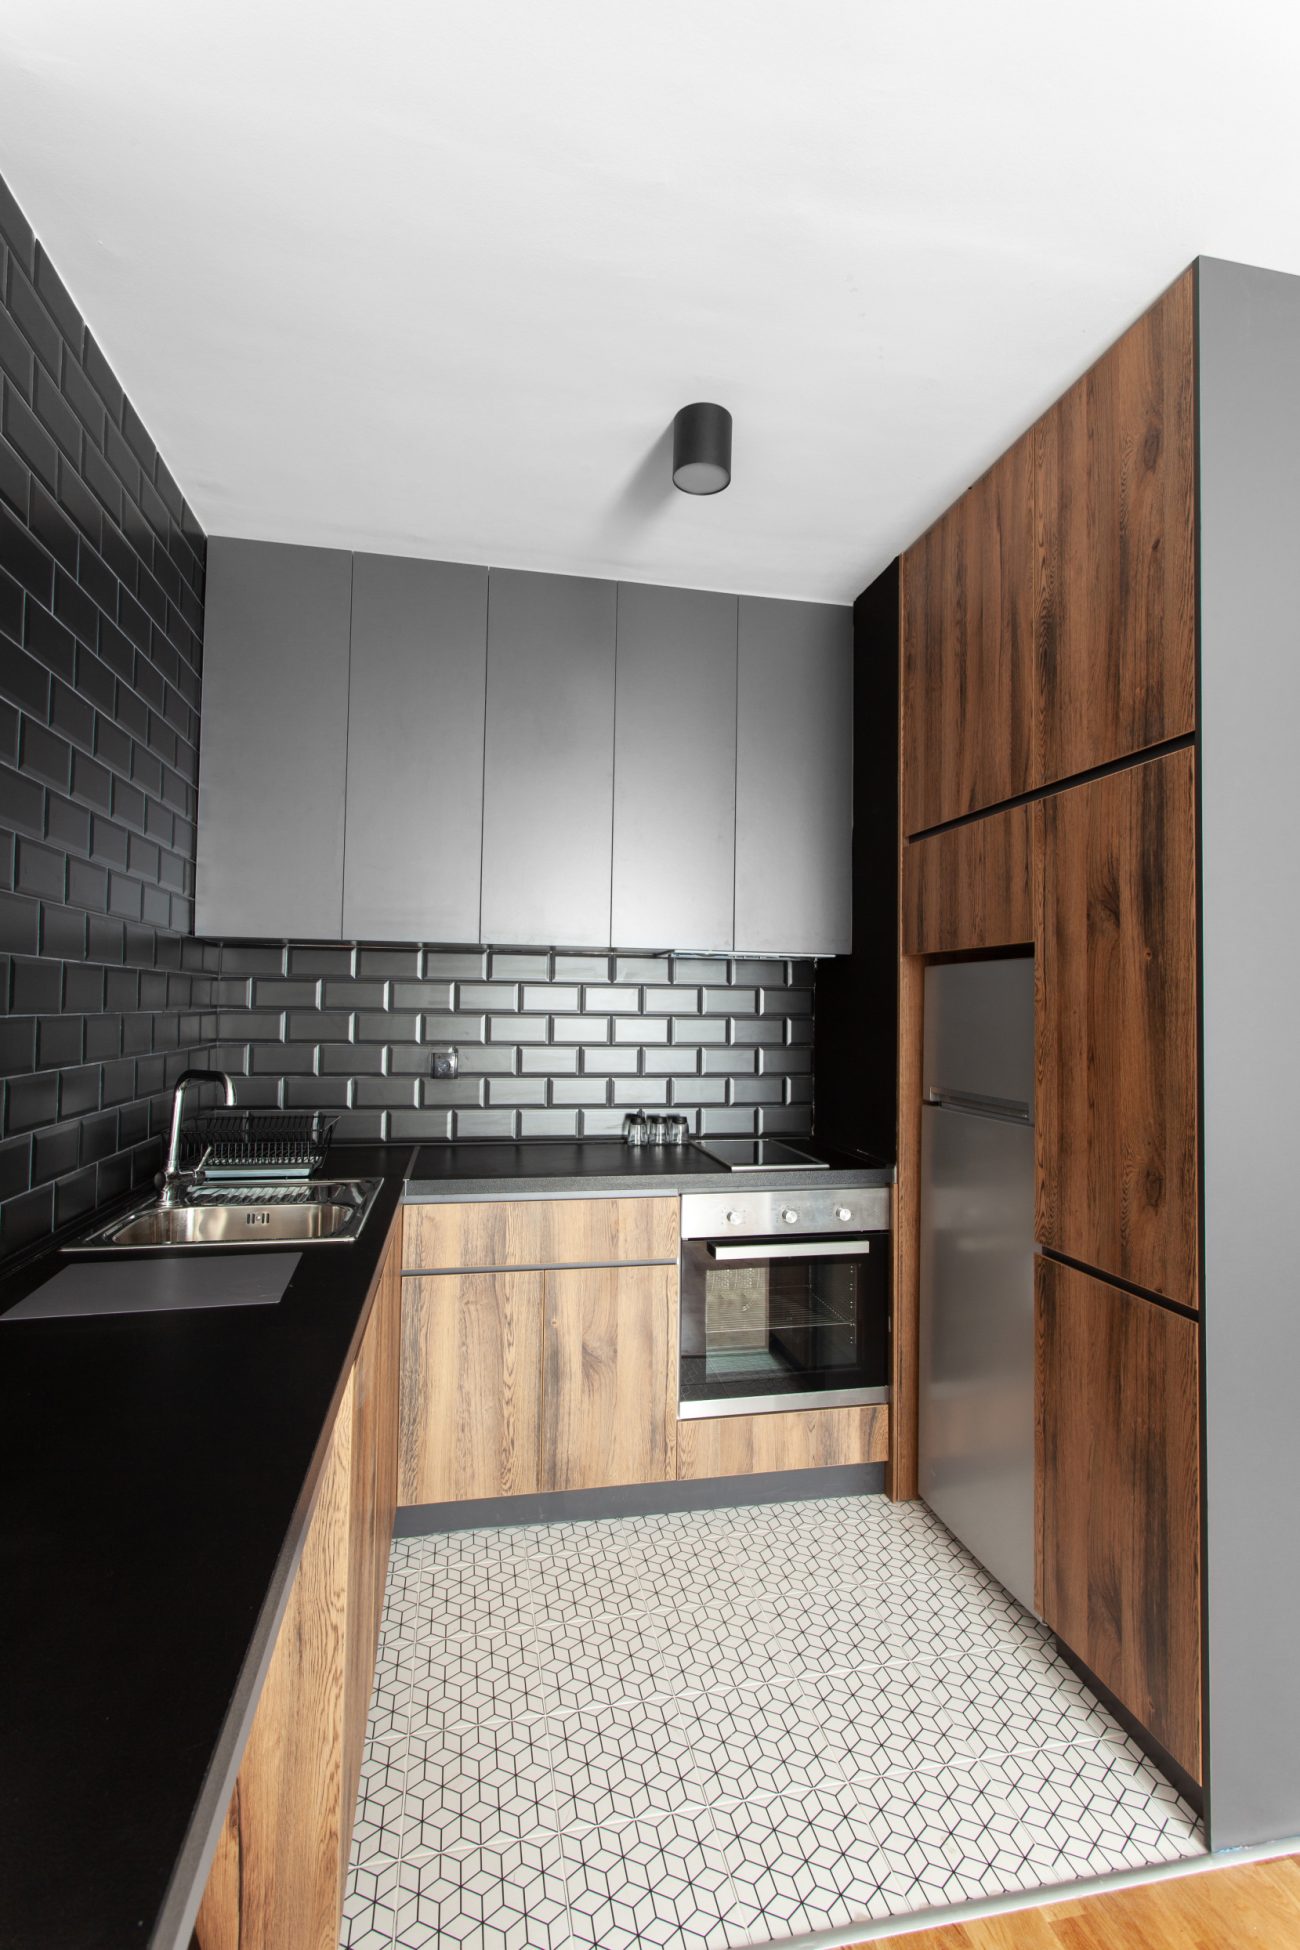 Petite cuisine fonctionnelle comprenant une étagère et des armoires en hauteur, ainsi qu’un grand espace de préparation pour les repas